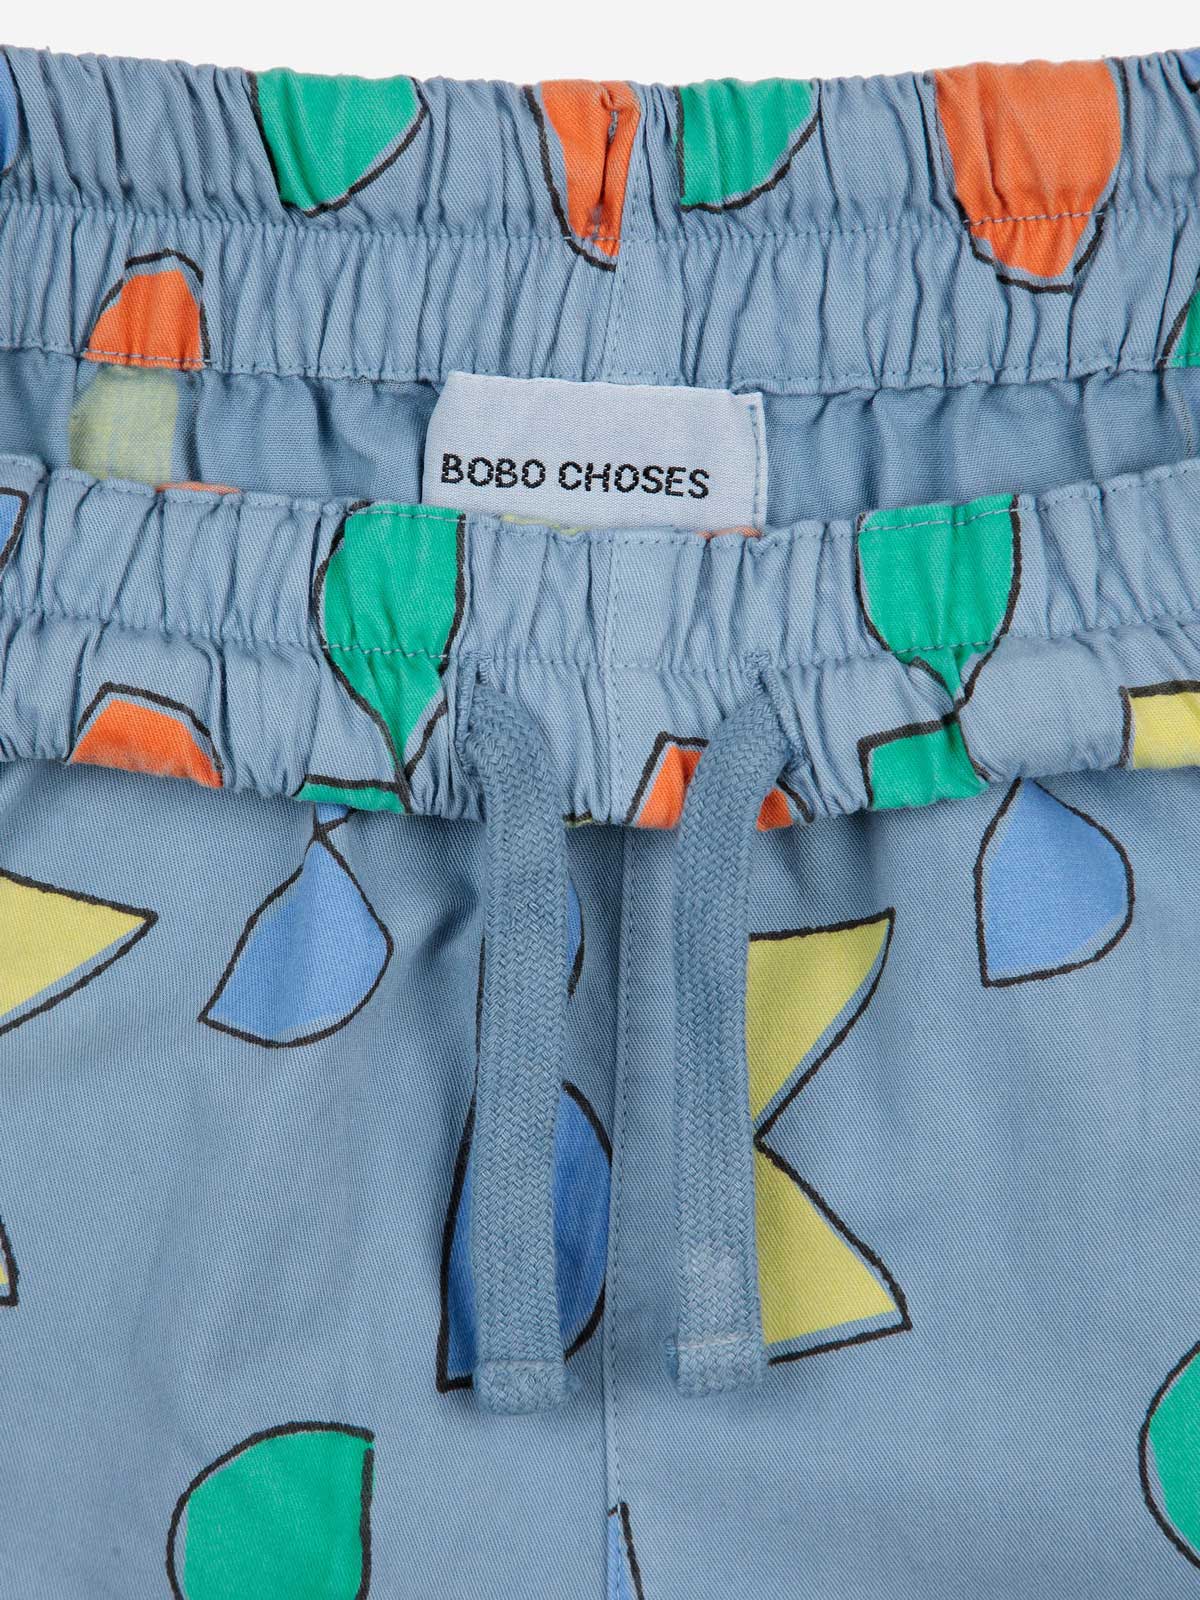 Pantalons estampat Bobo Choses de colors